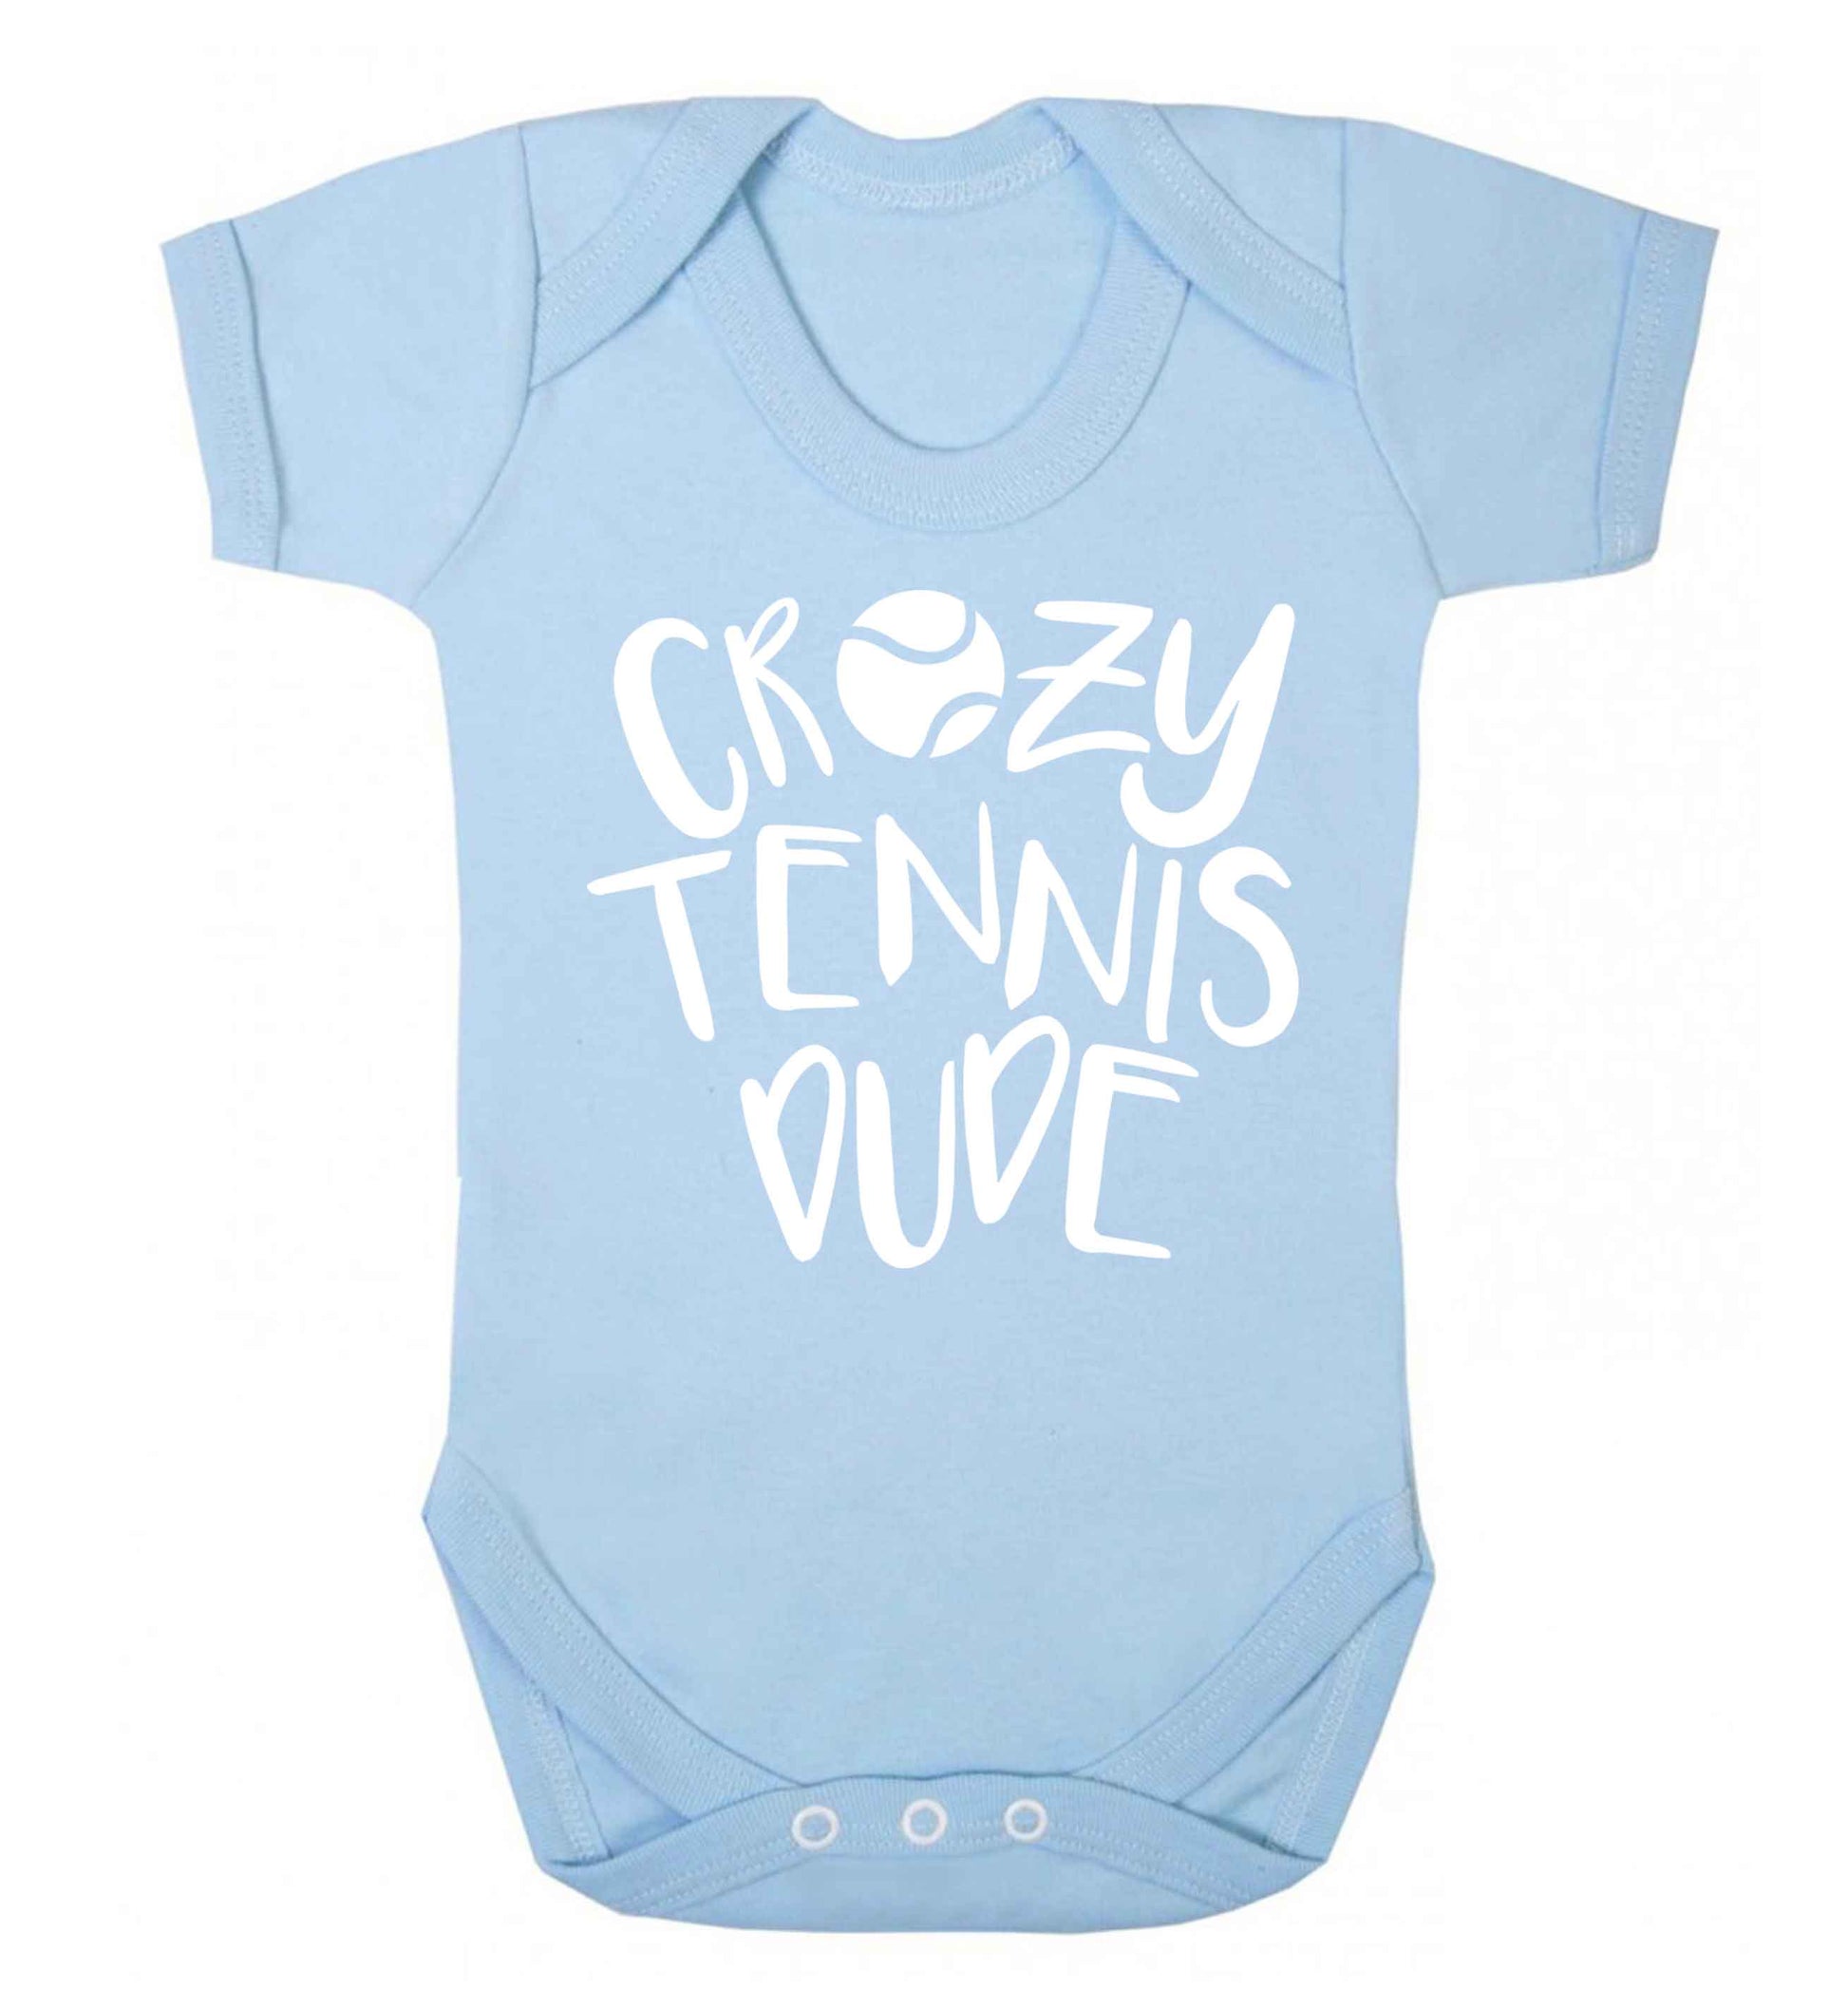 Crazy tennis dude Baby Vest pale blue 18-24 months